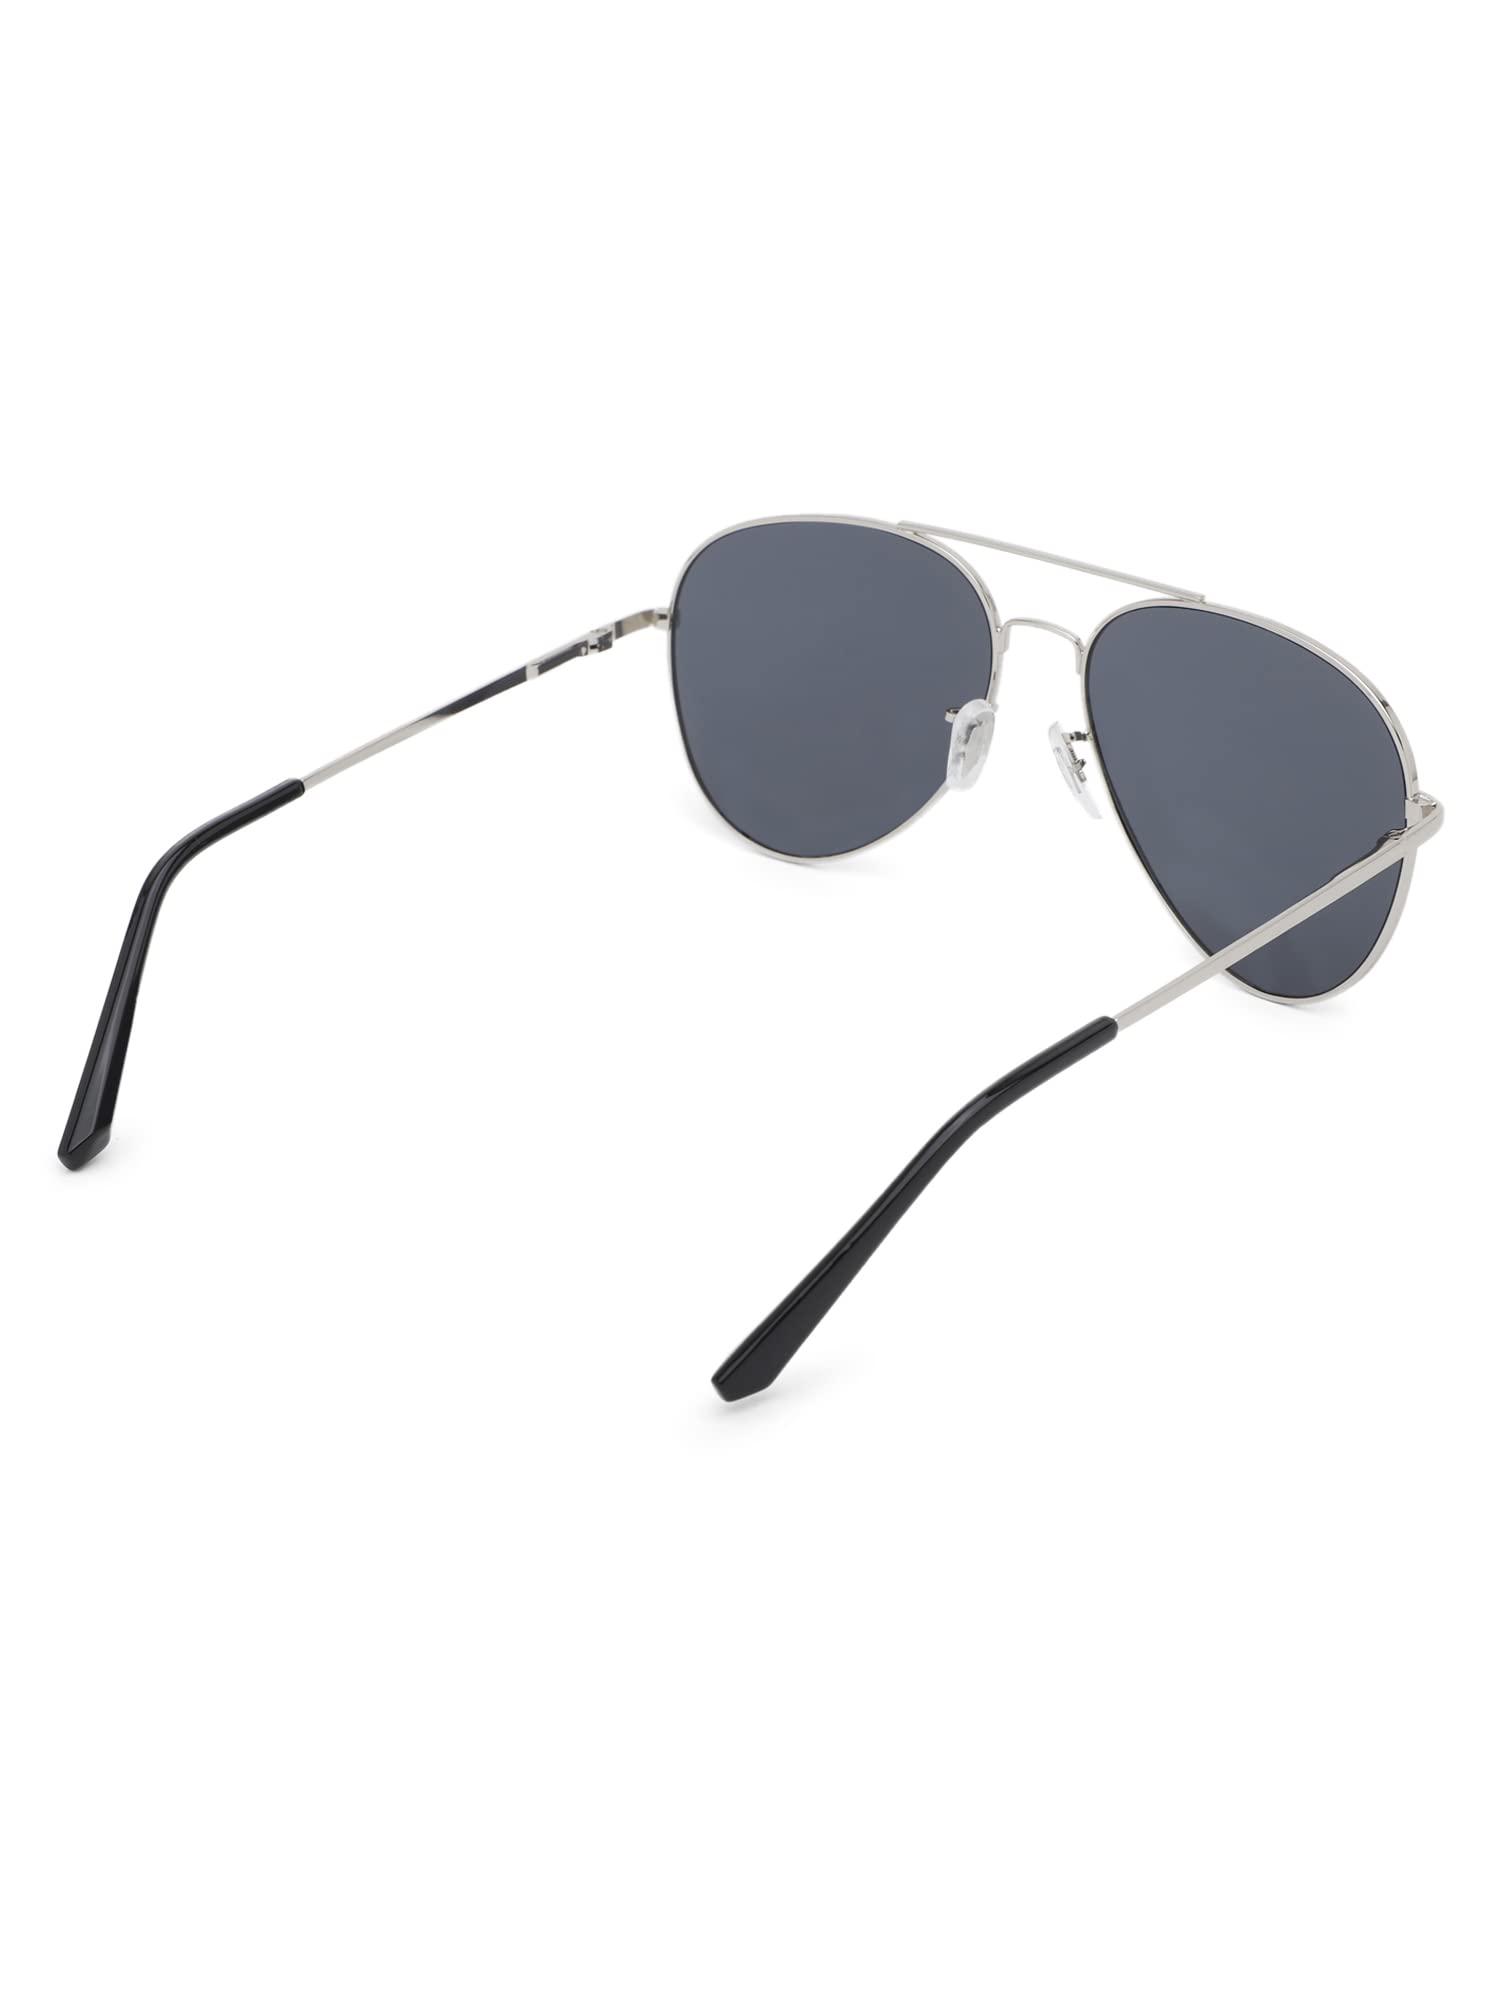 Intellilens Aviator UV Protected Sunglasses For Men & Women | Goggles for Men & Women (Silver & Black) (60-20-145) - Pack of 1